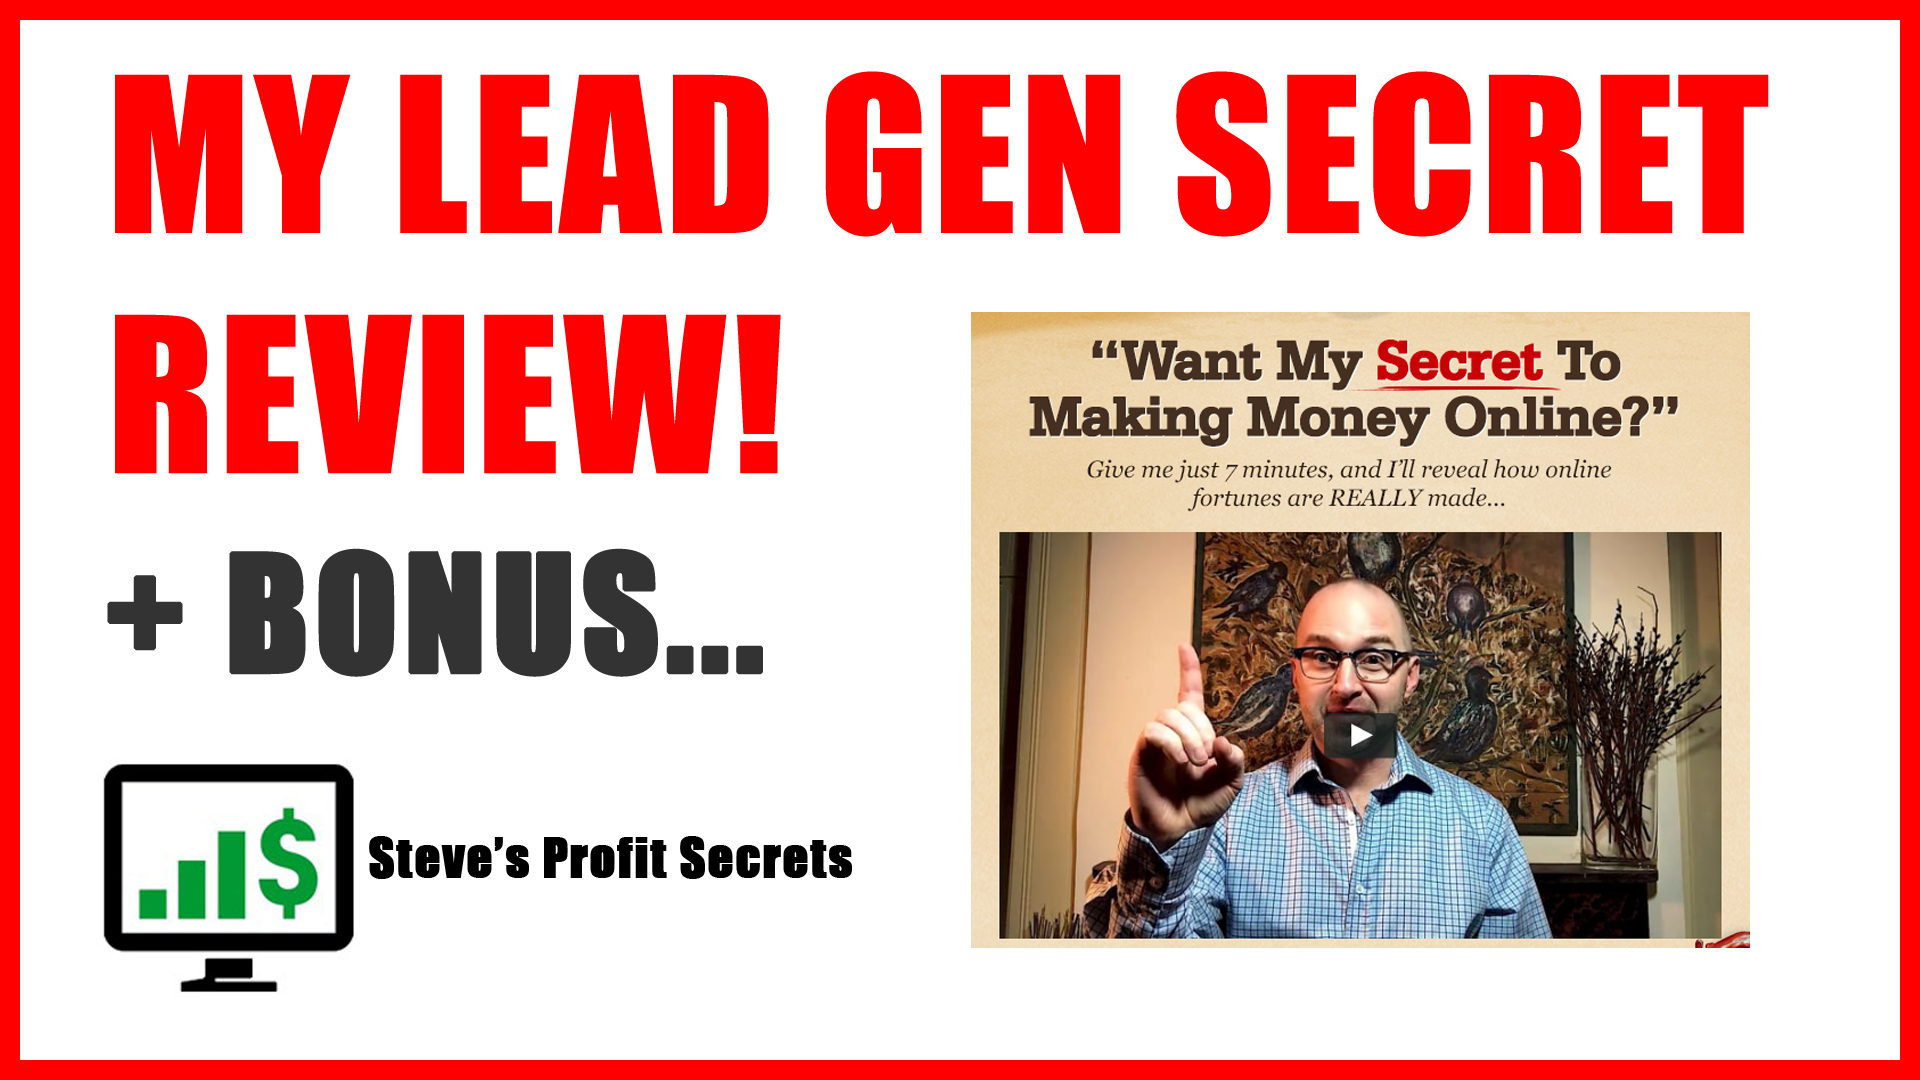 My Lead Gen Secret Review + Bonus - Steve's Profit Secrets